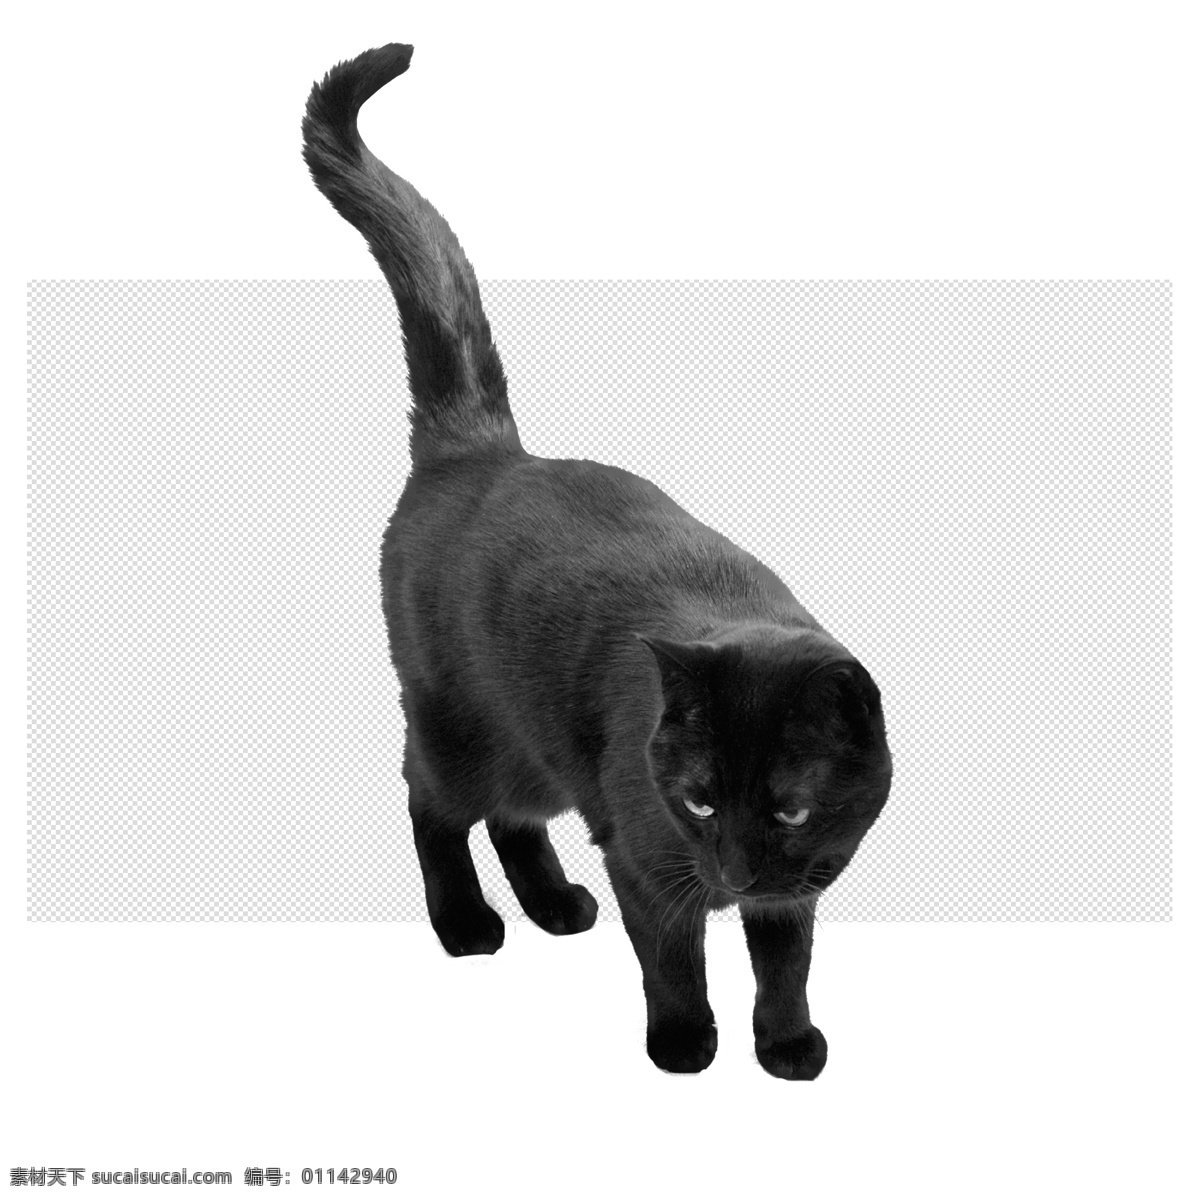 黑猫图片 黑猫 小猫 猫 小老虎 可爱猫咪 透明底 动物 免抠图 psd分层图 分层图 免扣 透明 透明背景 分层